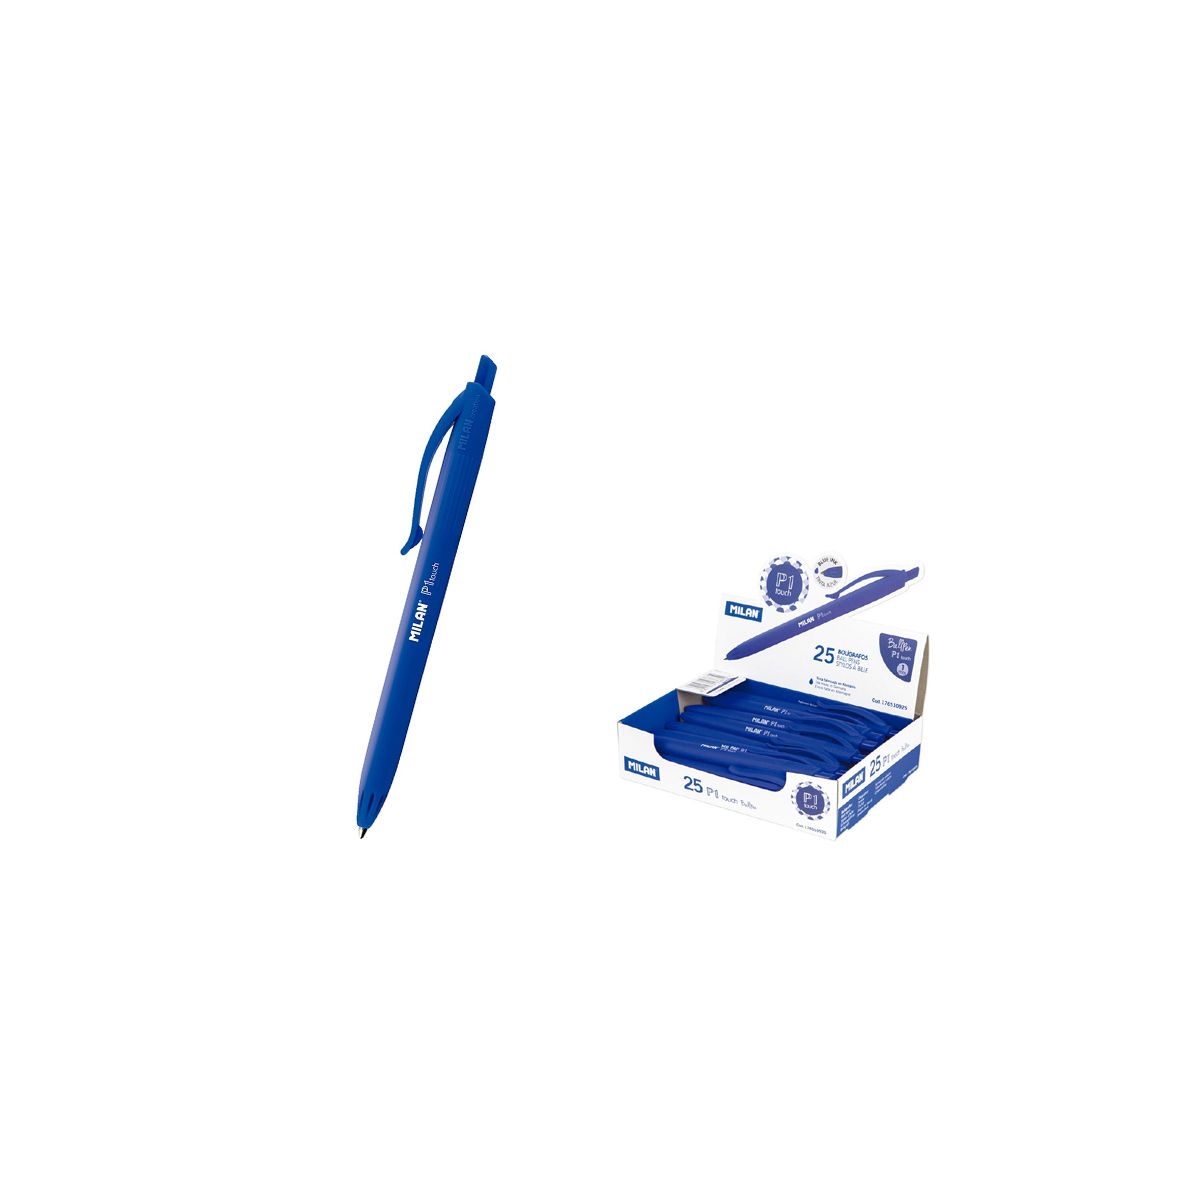 Długopis Milan P1 TOUCH niebieski 1,0mm (176510925)